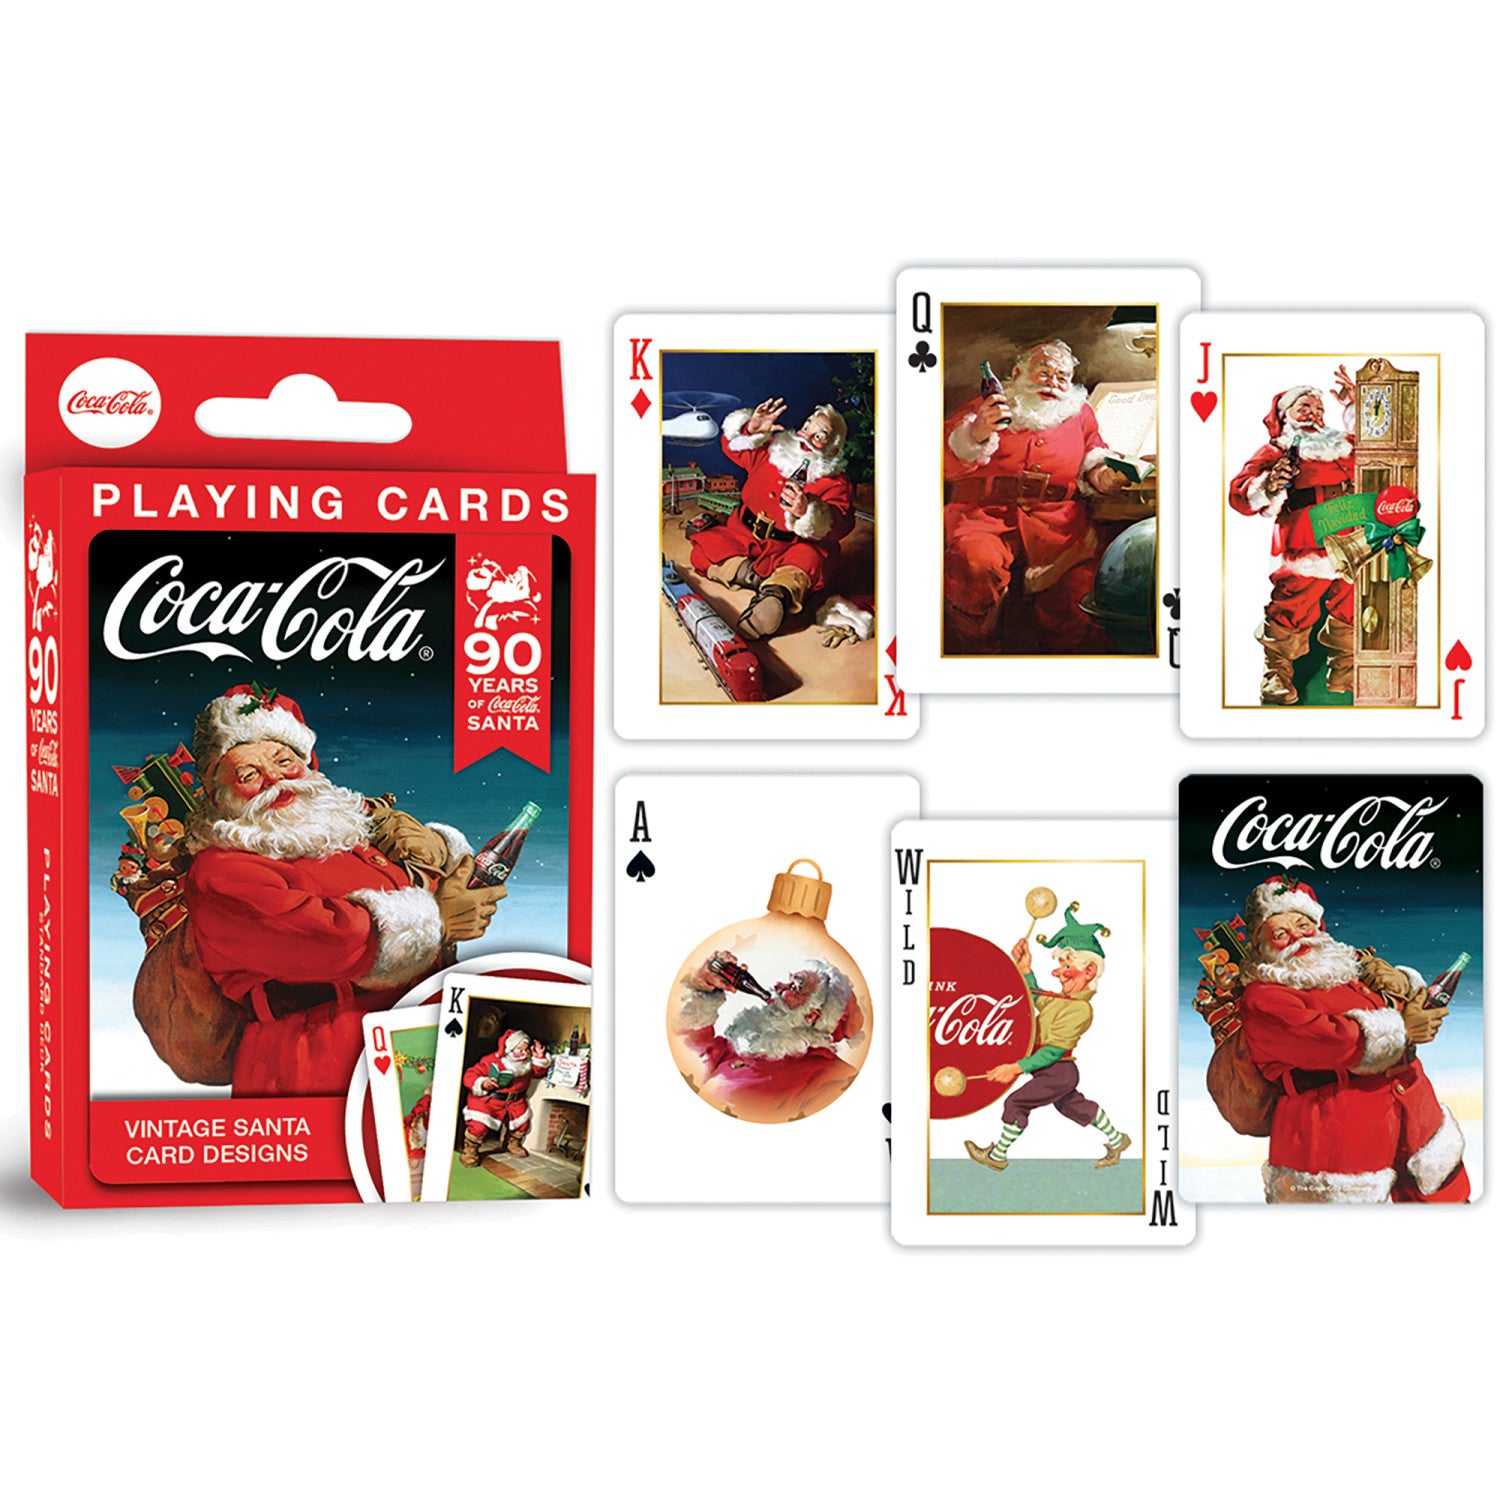 Coca-Cola Vintage Santa Playing Cards - 54 Card Deck